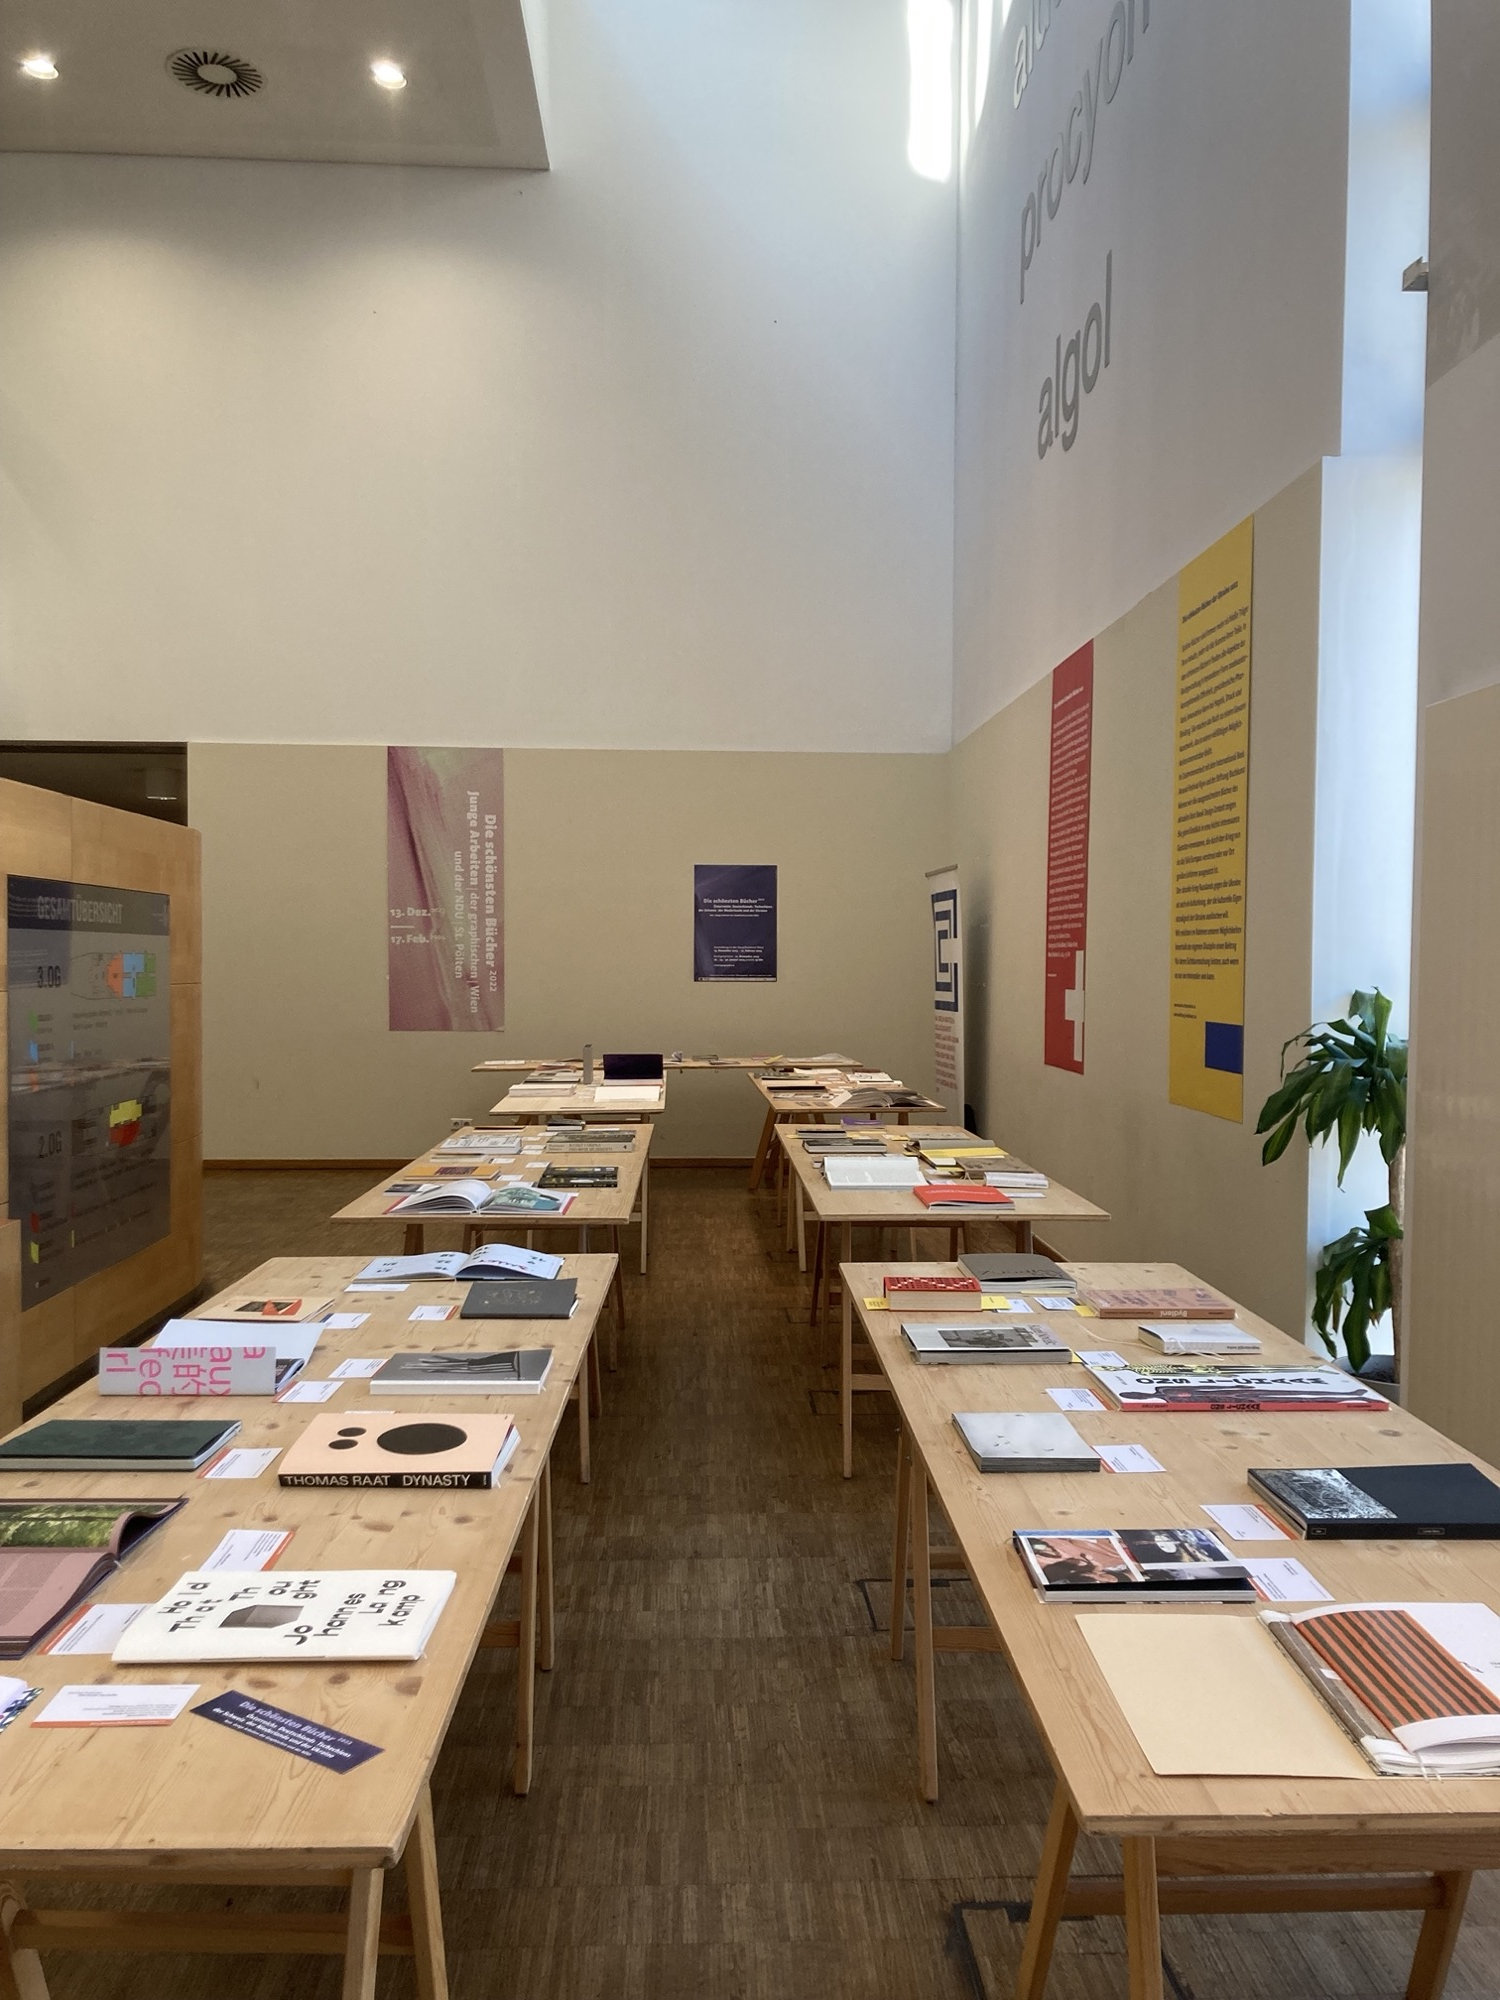 Überblick über die Ausstellung, links und rechts sind drei Tische aneinander gereiht, darauf liegen verschiedene Bücher